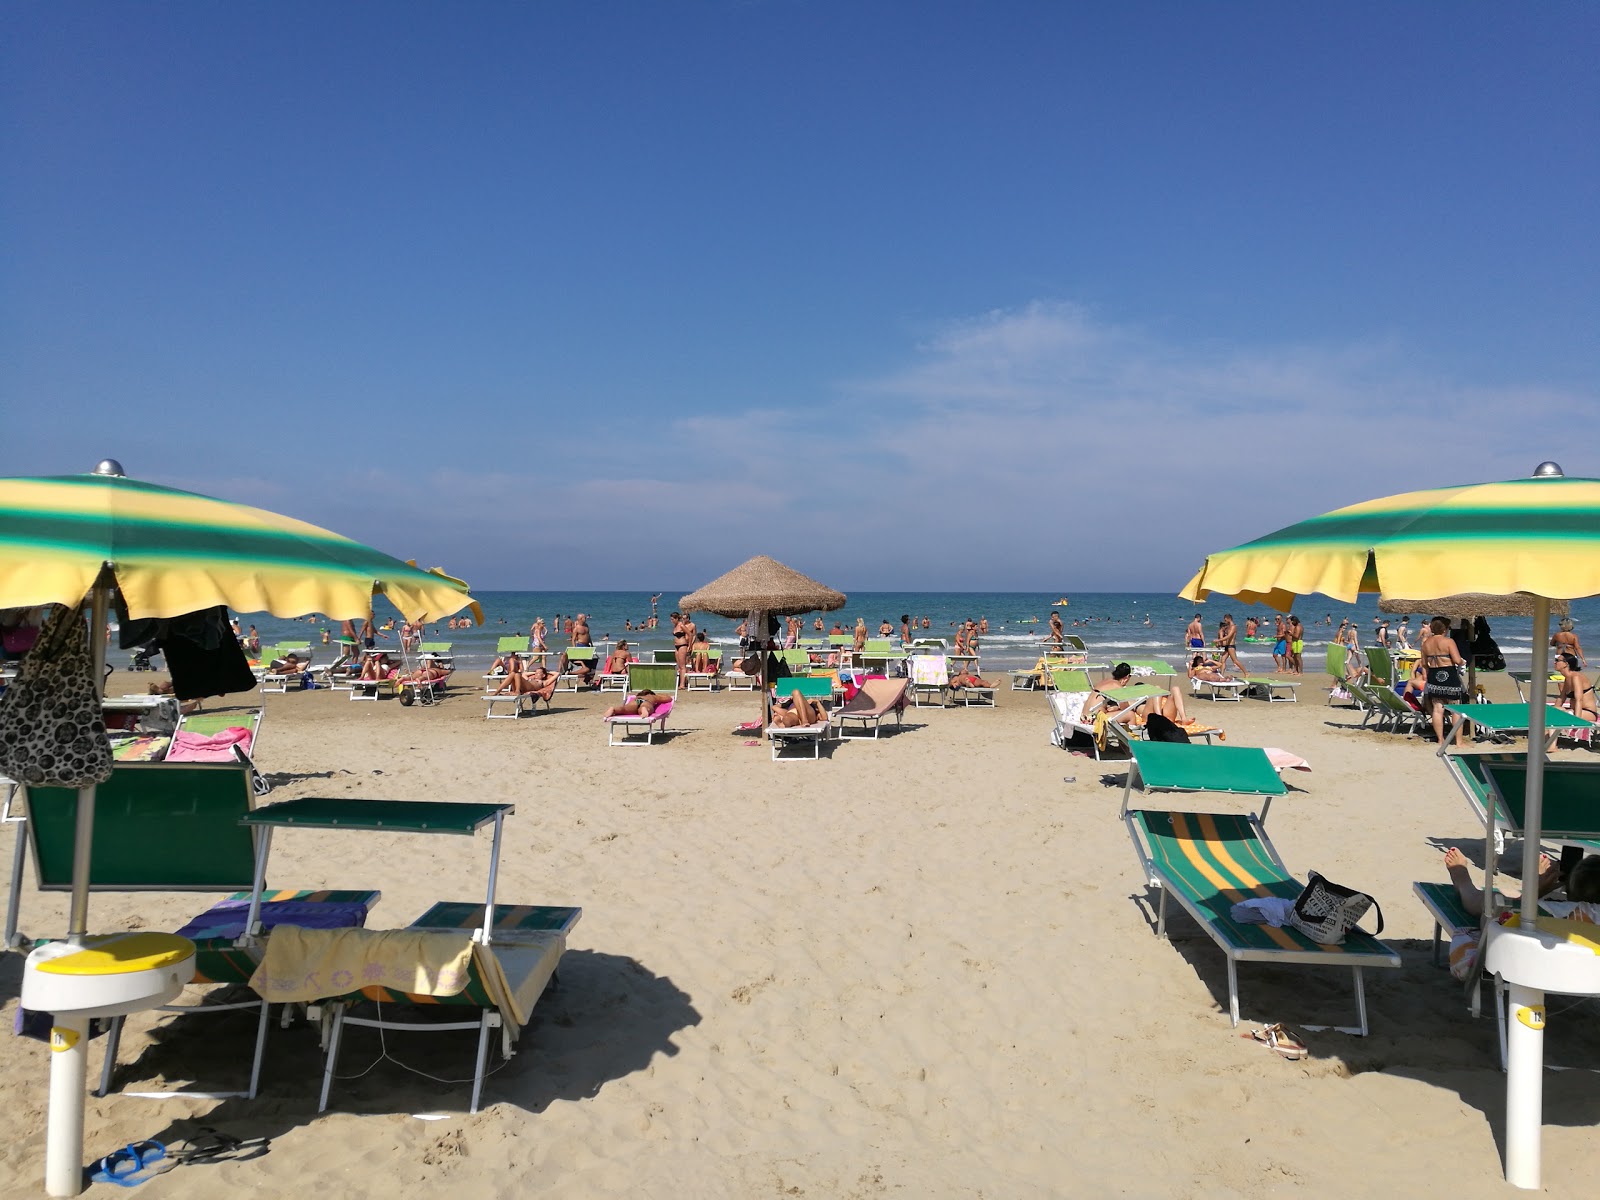 Foto af Spiaggia Senigallia - populært sted blandt afslapningskendere